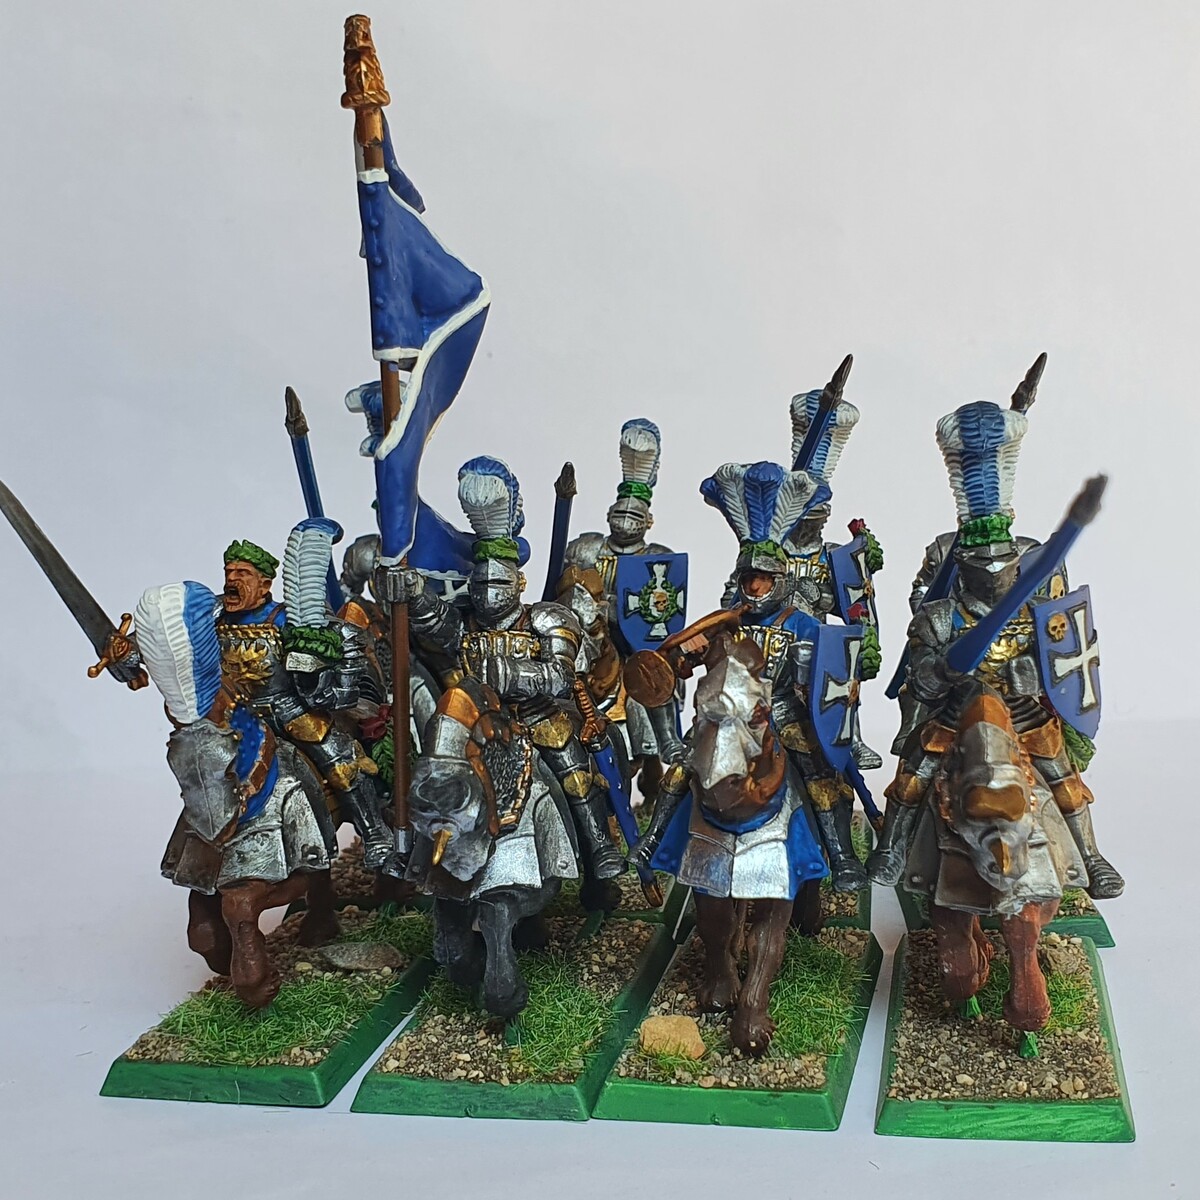 Orden de caballería del imperio: Reiksguard